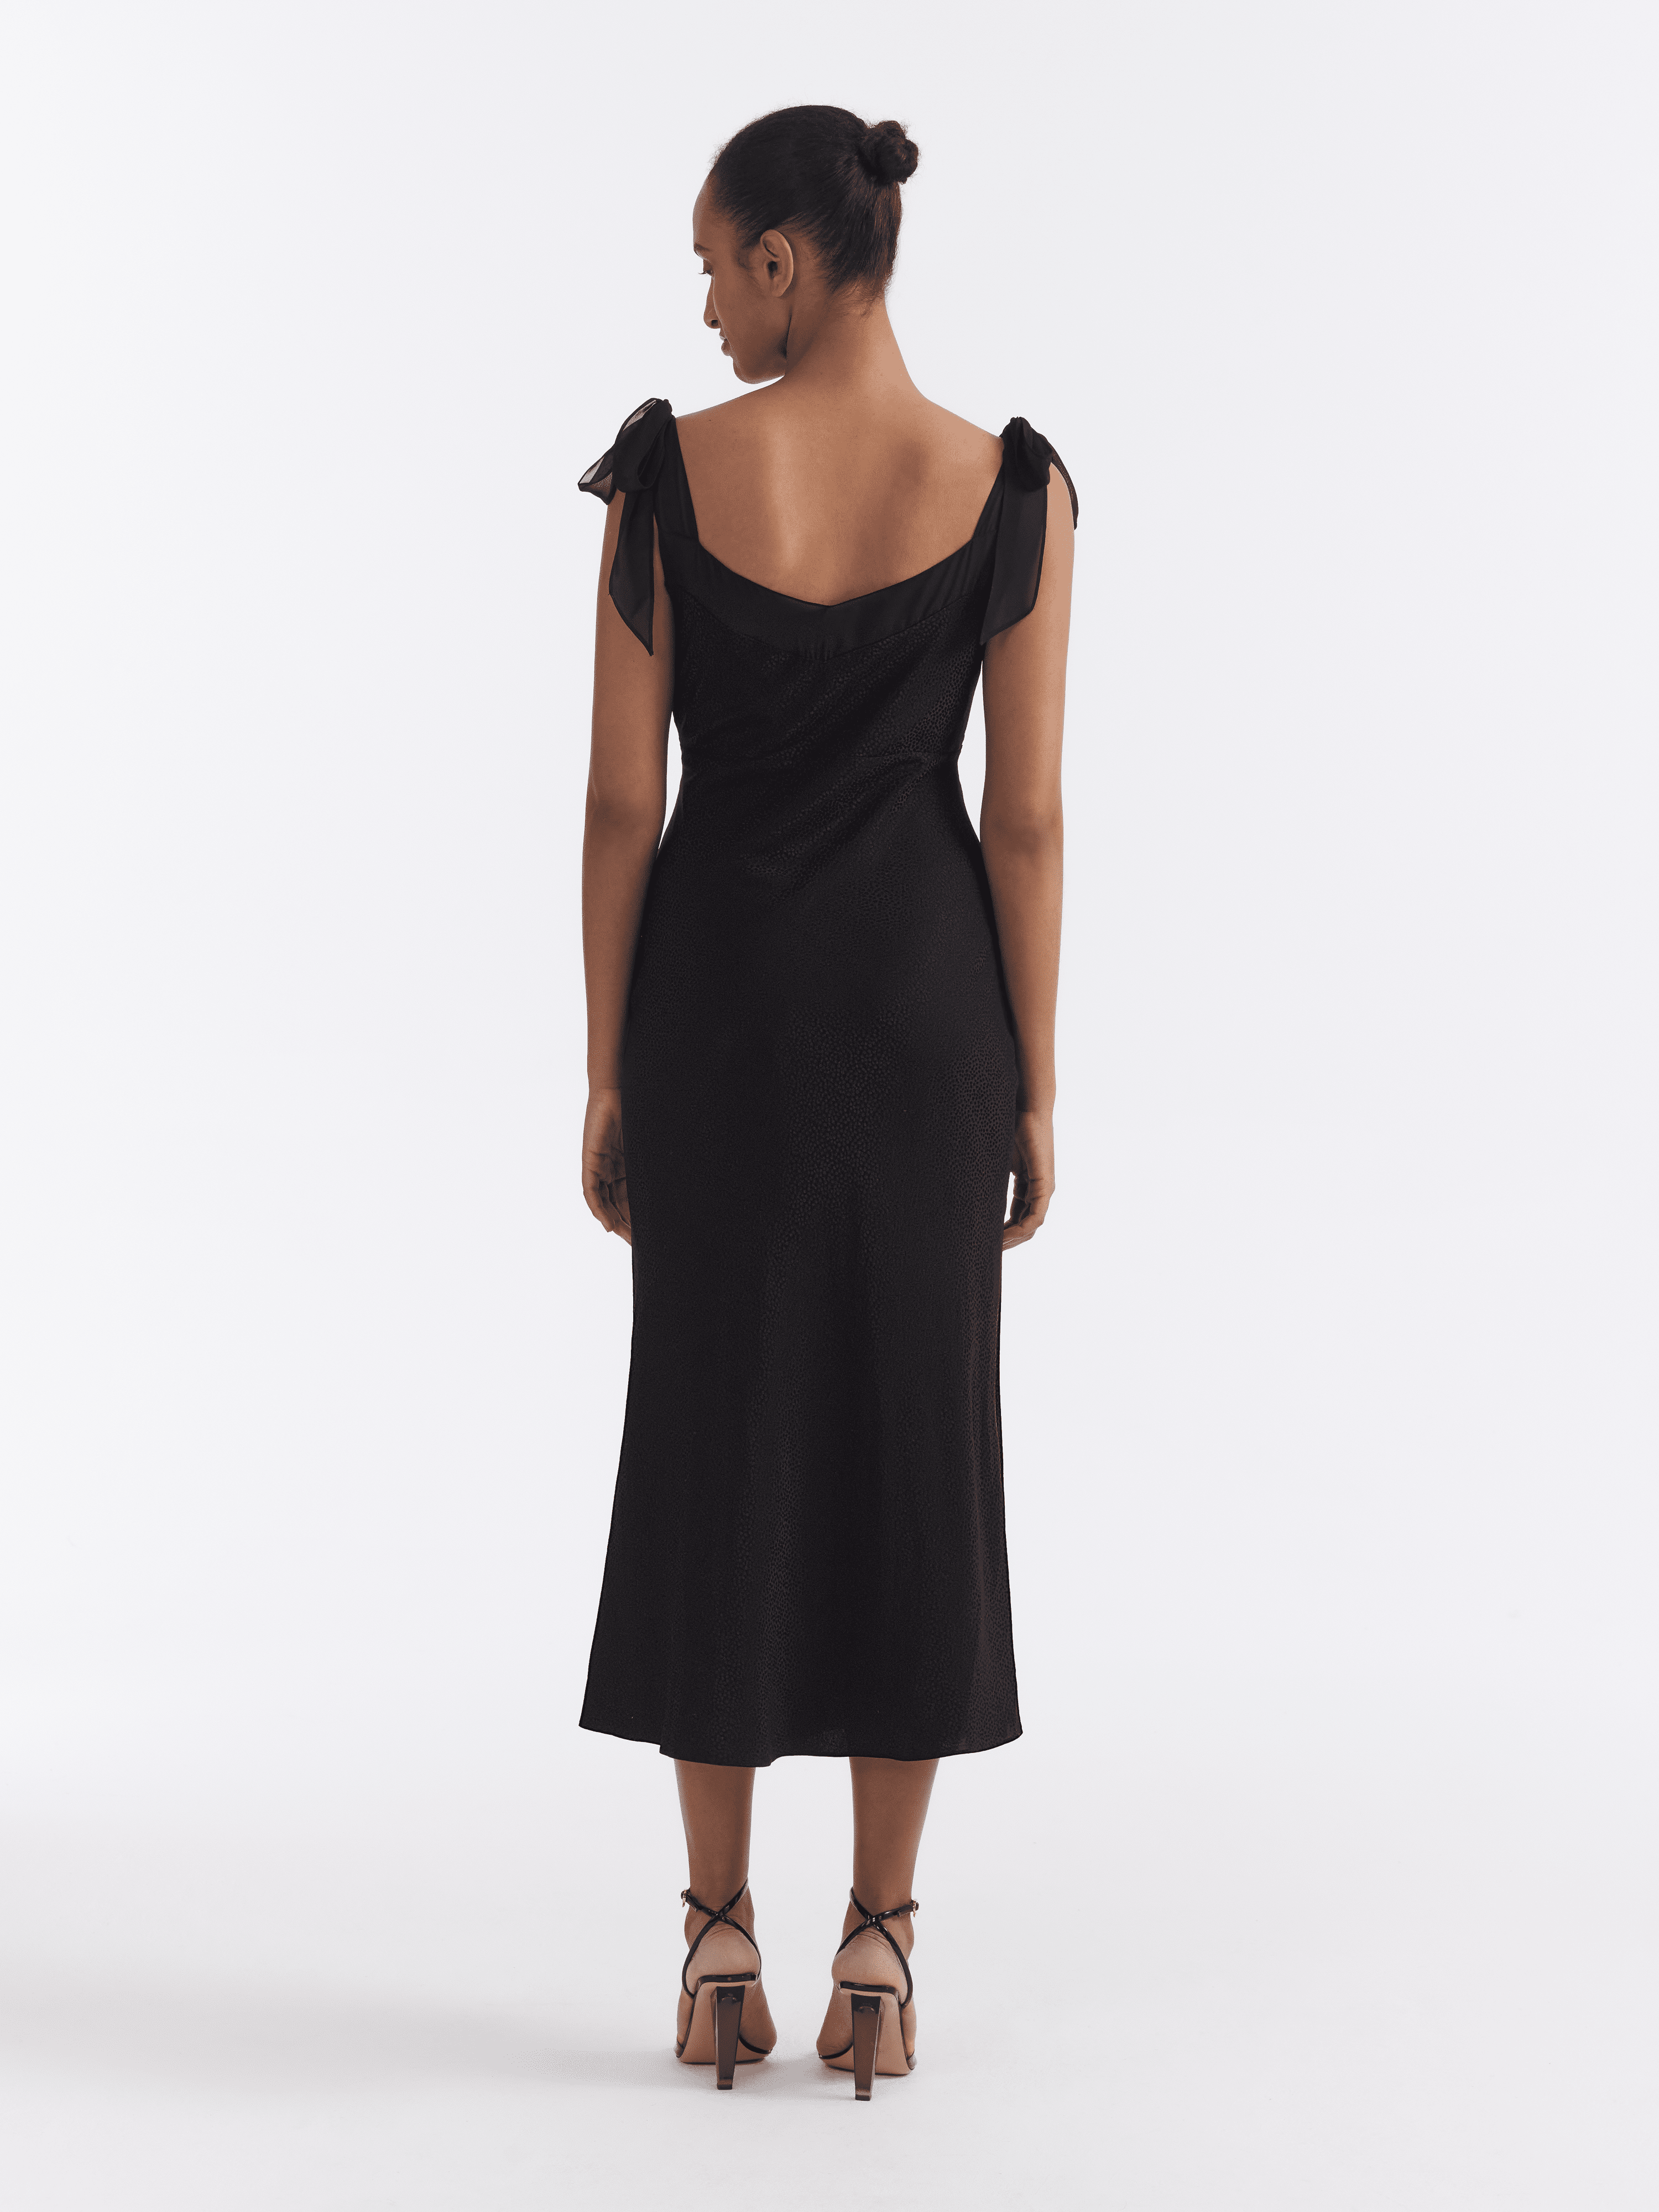 Amelie C Dress in Black Fireflower